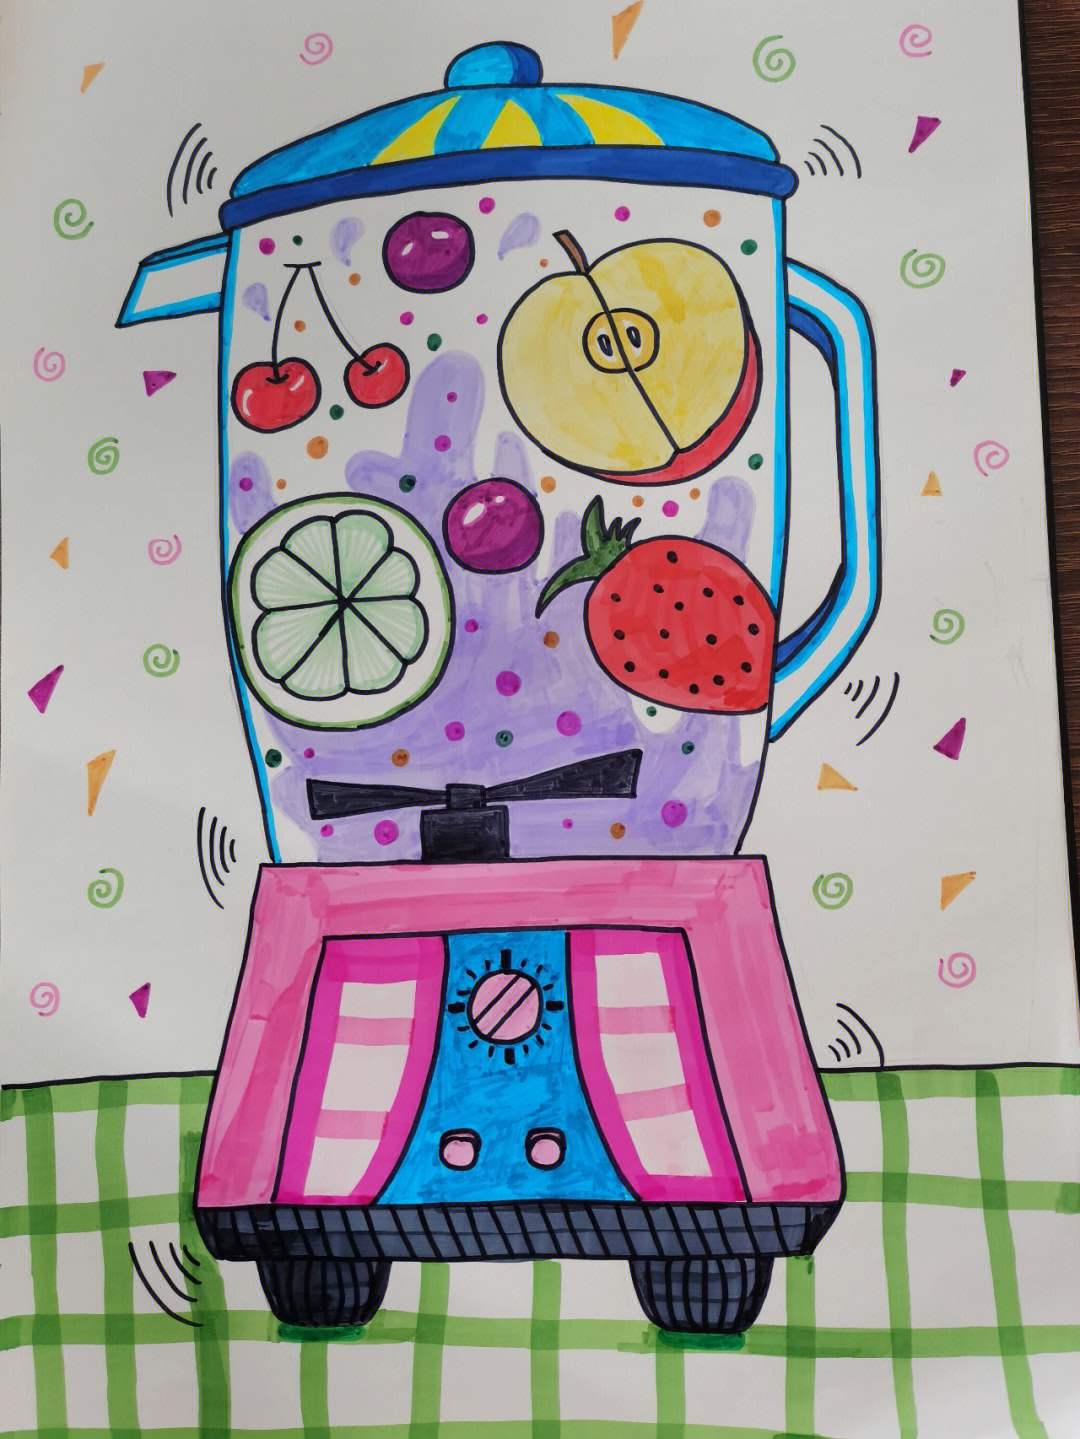 榨汁机手绘效果图图片